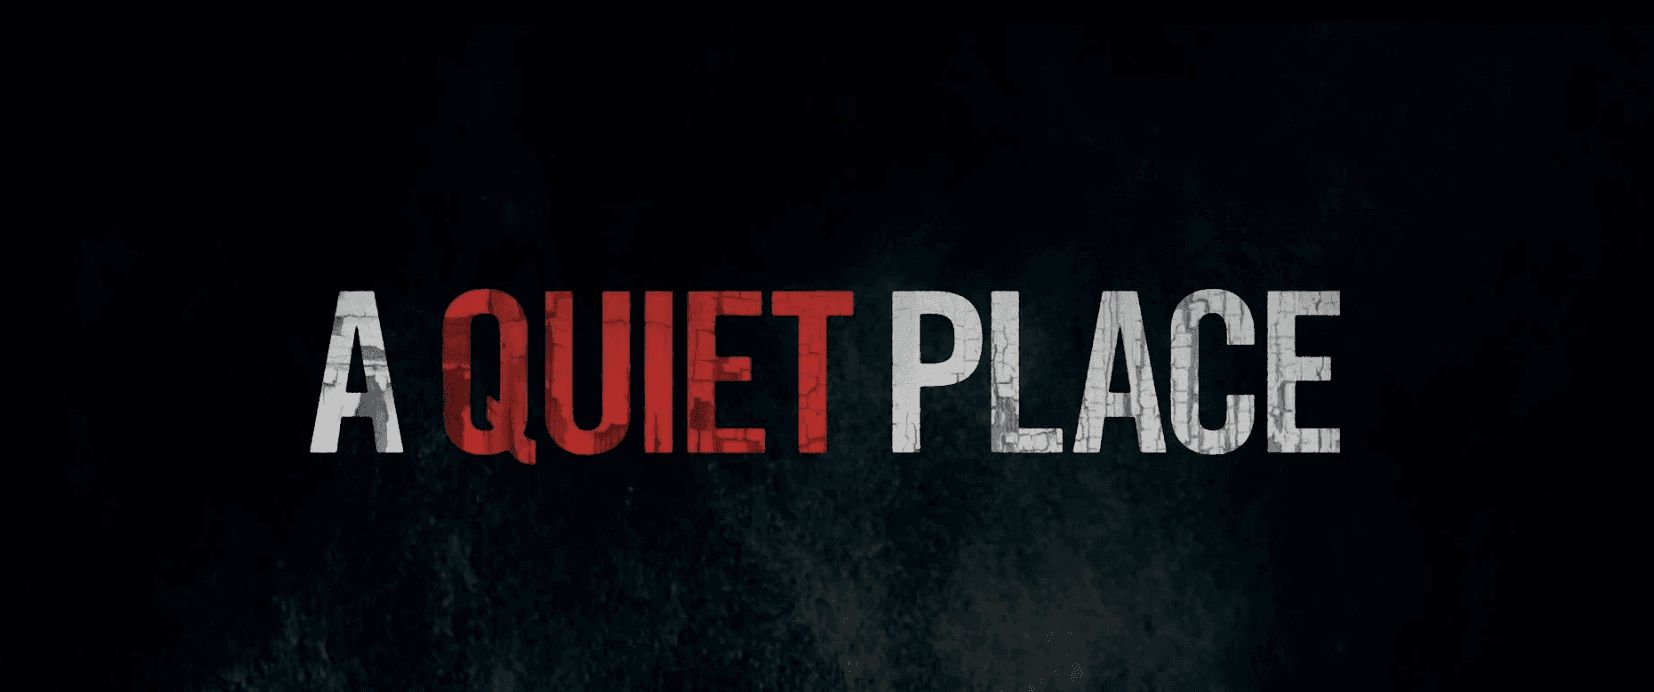 A Quiet Place: Part II